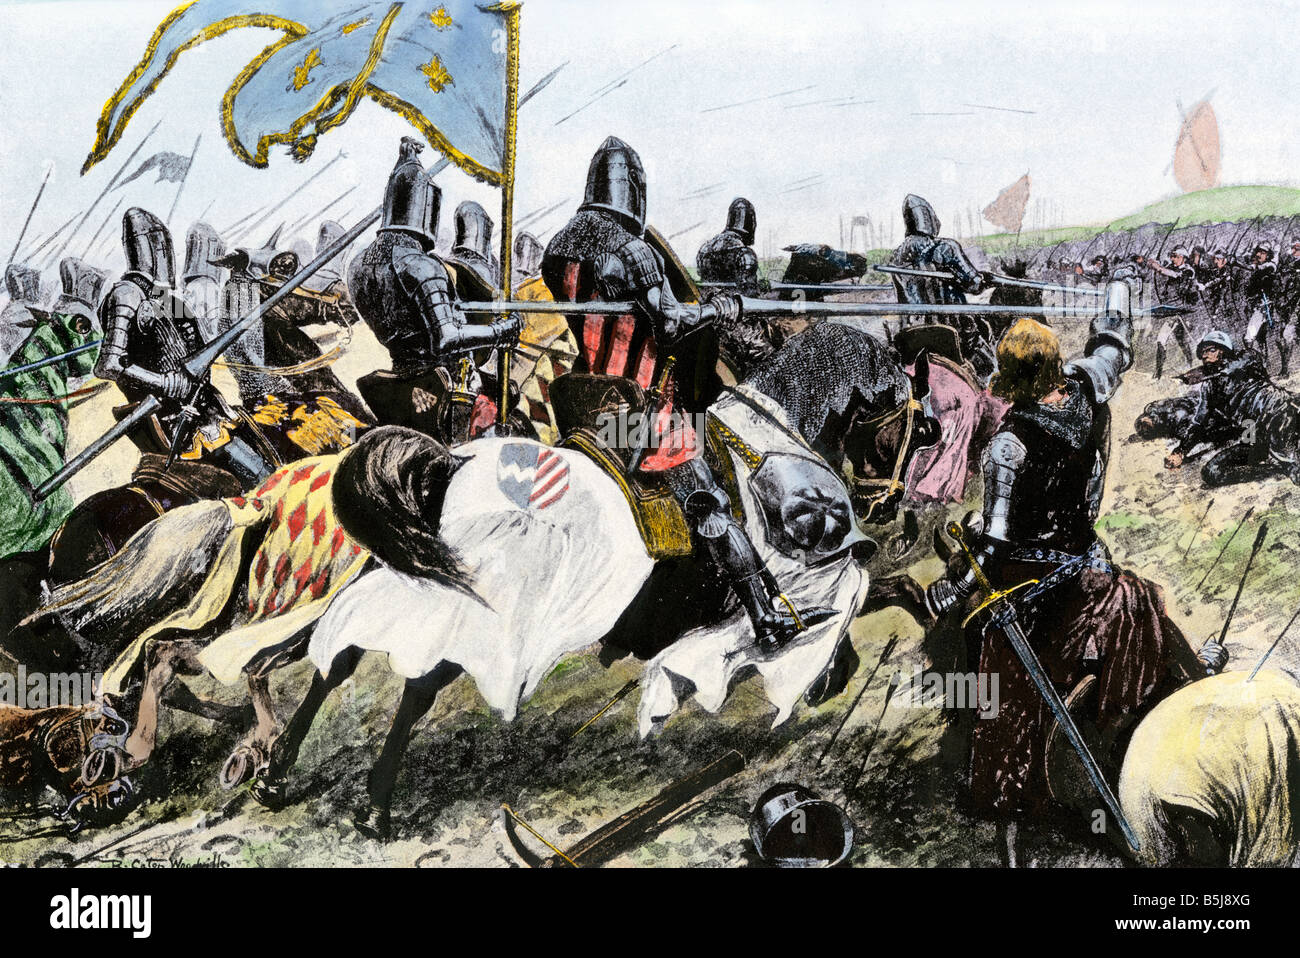 La charge des 150000 - Page 2 Charge-de-chevaliers-francais-contre-anglais-a-crecy-vissent-pendant-la-guerre-de-cent-ans-1346-la-main-d-une-illustration-de-demi-teinte-b5j8xg